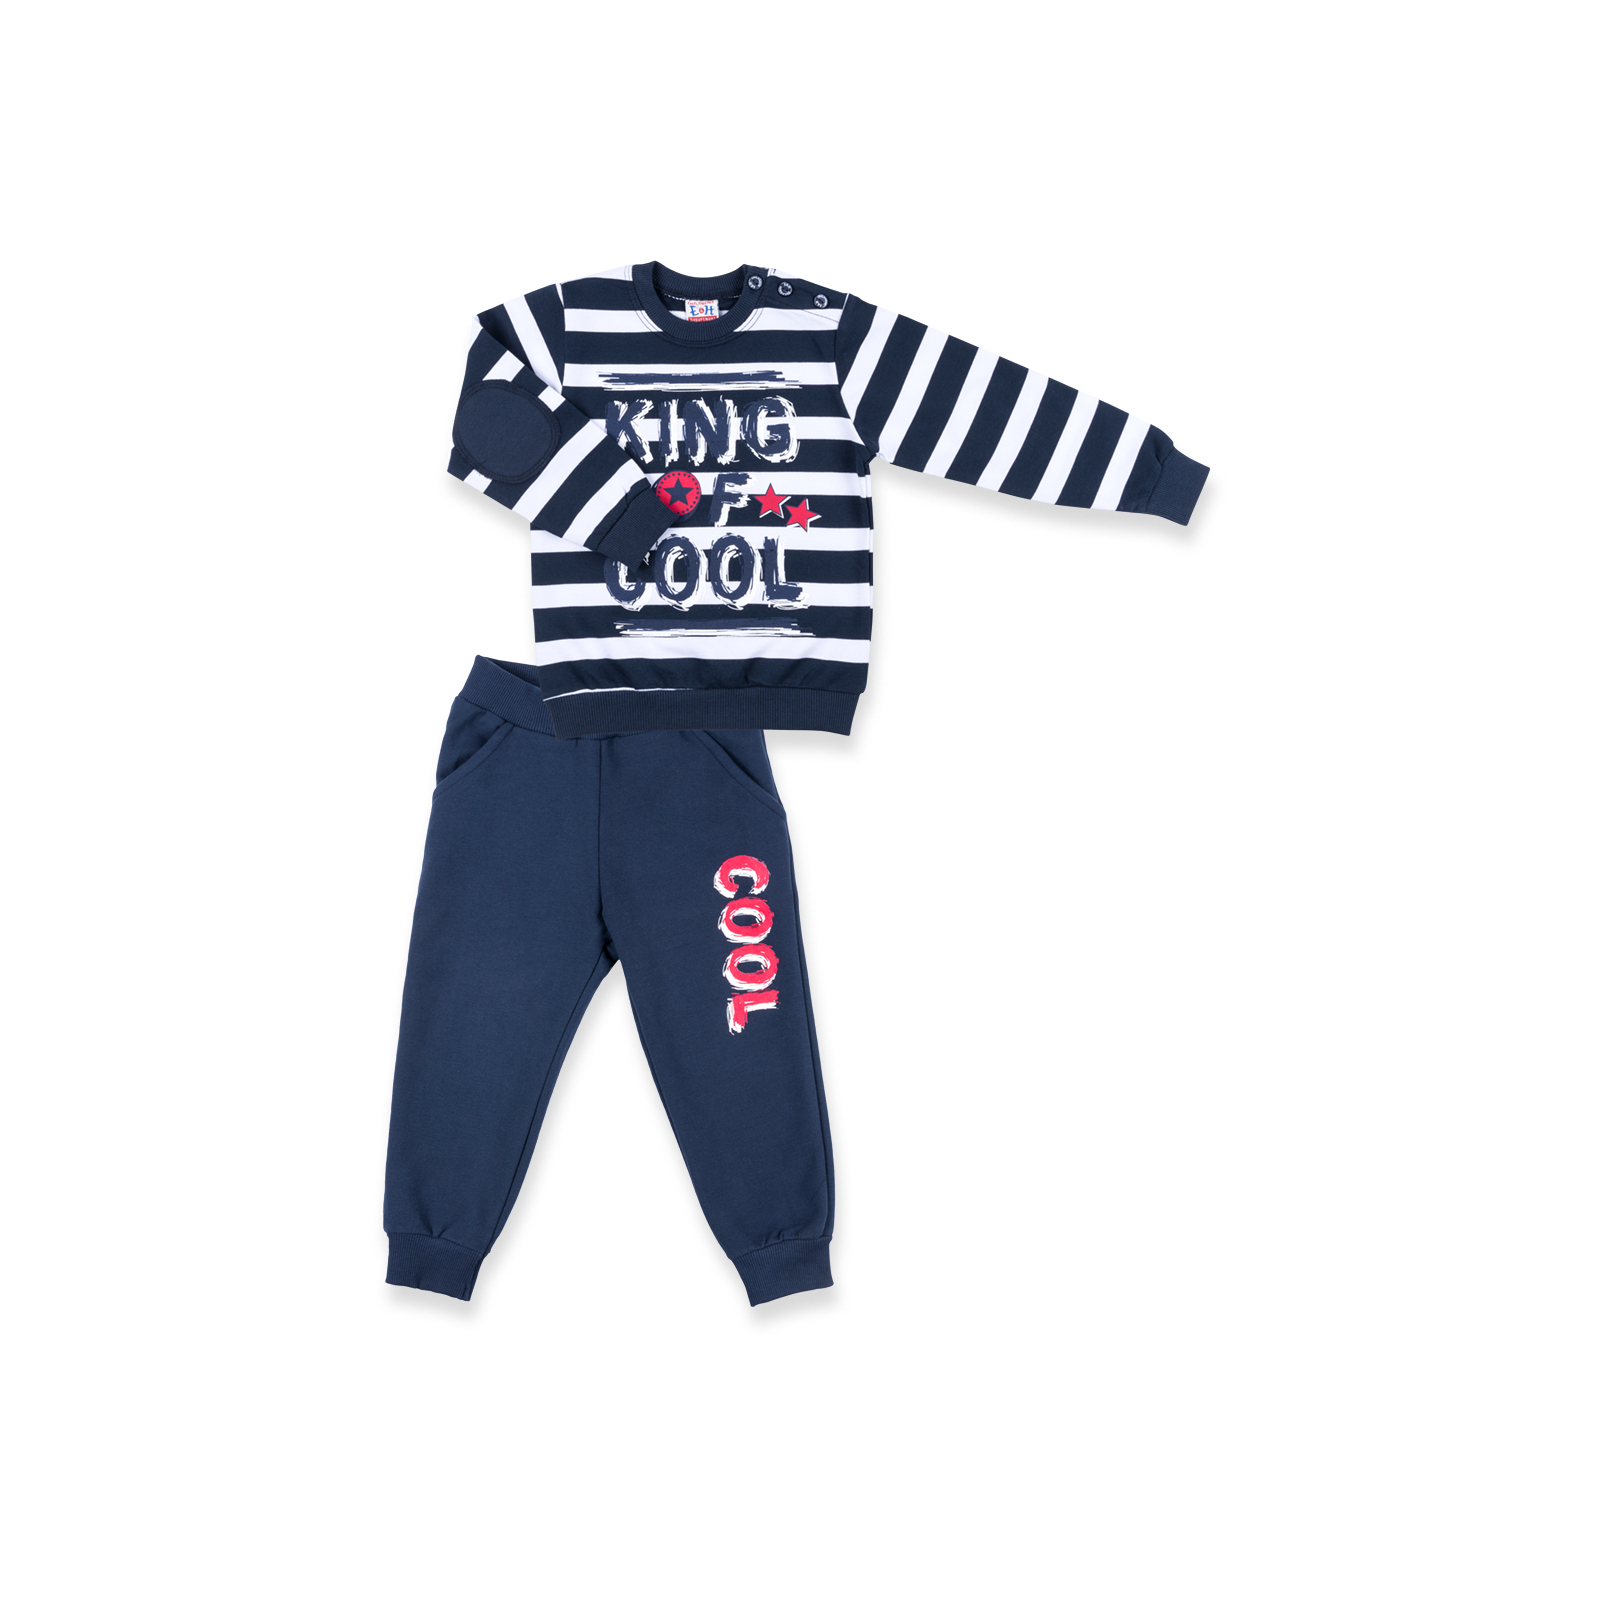 Набор детской одежды Breeze "KING OF COOL" (8632-110B-blue)